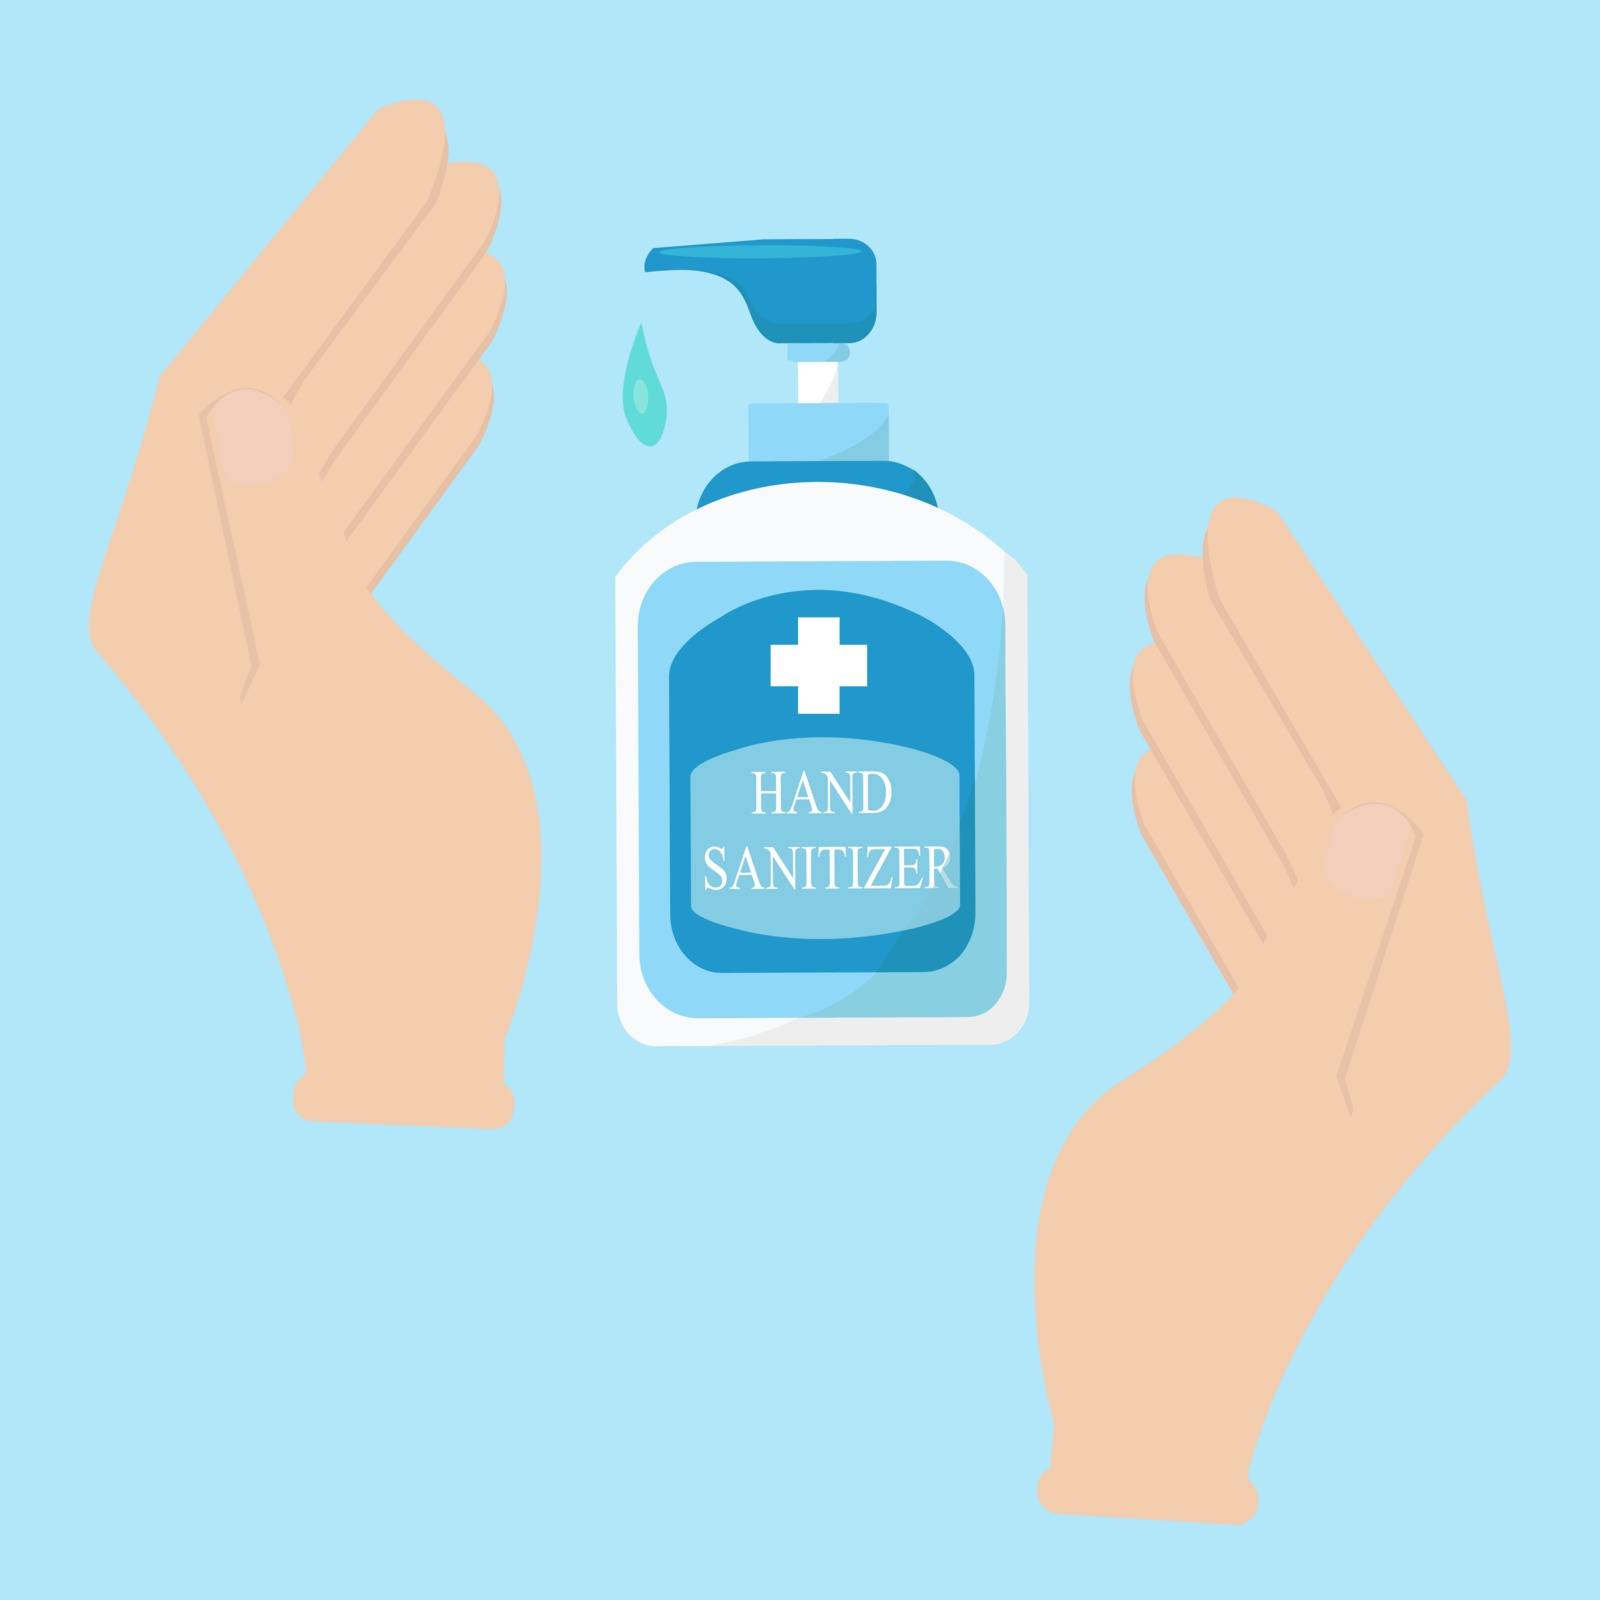 Hand sanitizer, hand sanitation concept banner. 
Flat illustration of hand sanitation vector concept banner for web design